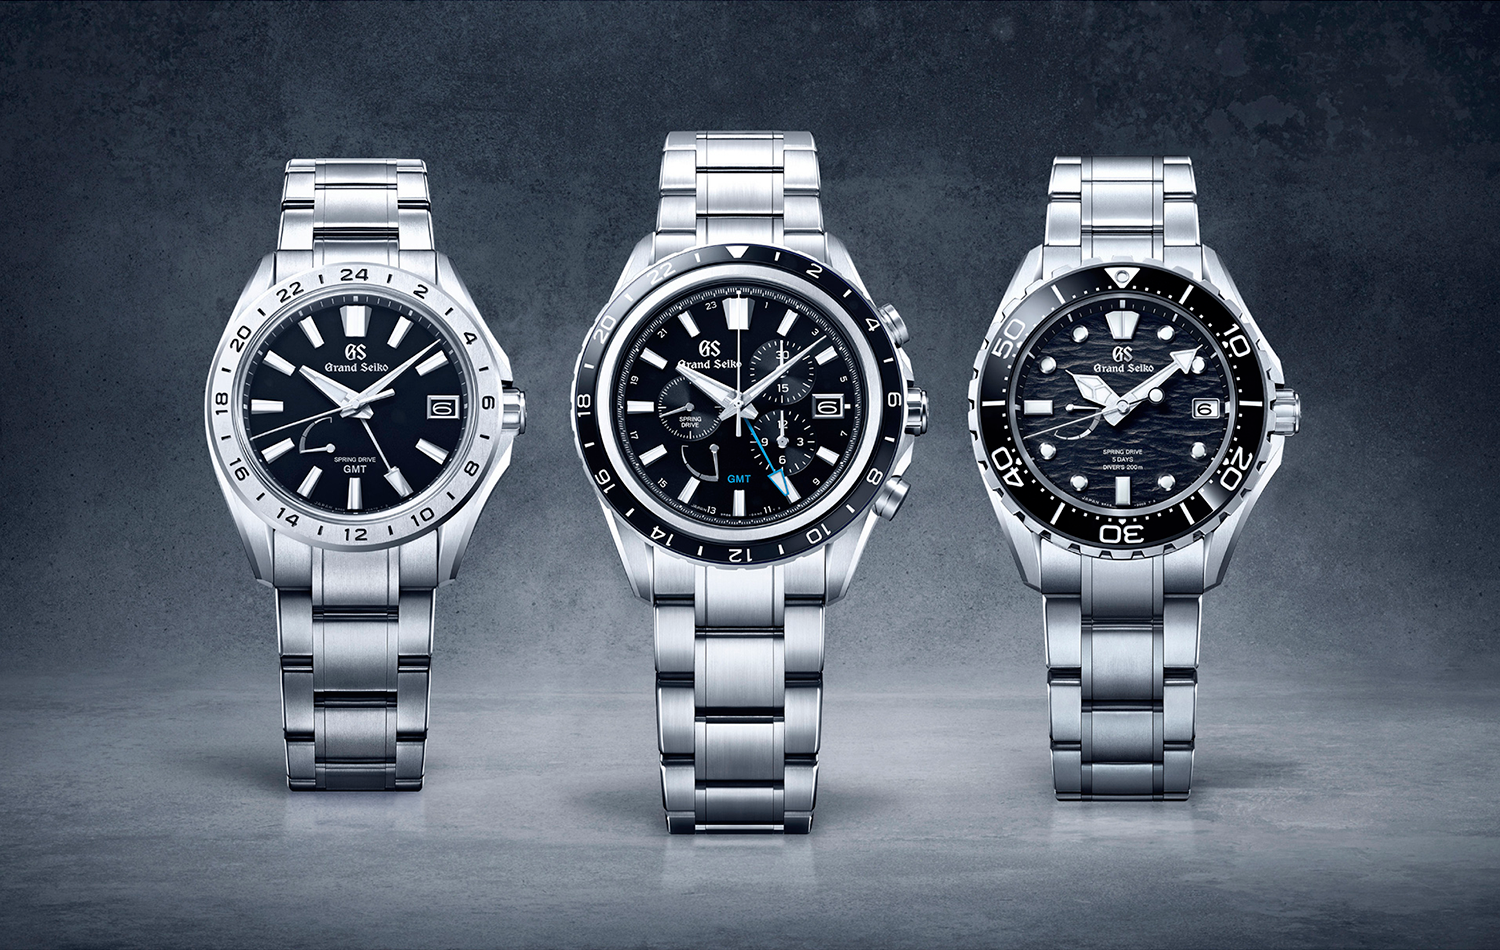 Novos produtos: A Seiko apresenta dois novos relógios elegantes e discretos para todas as ocasiões